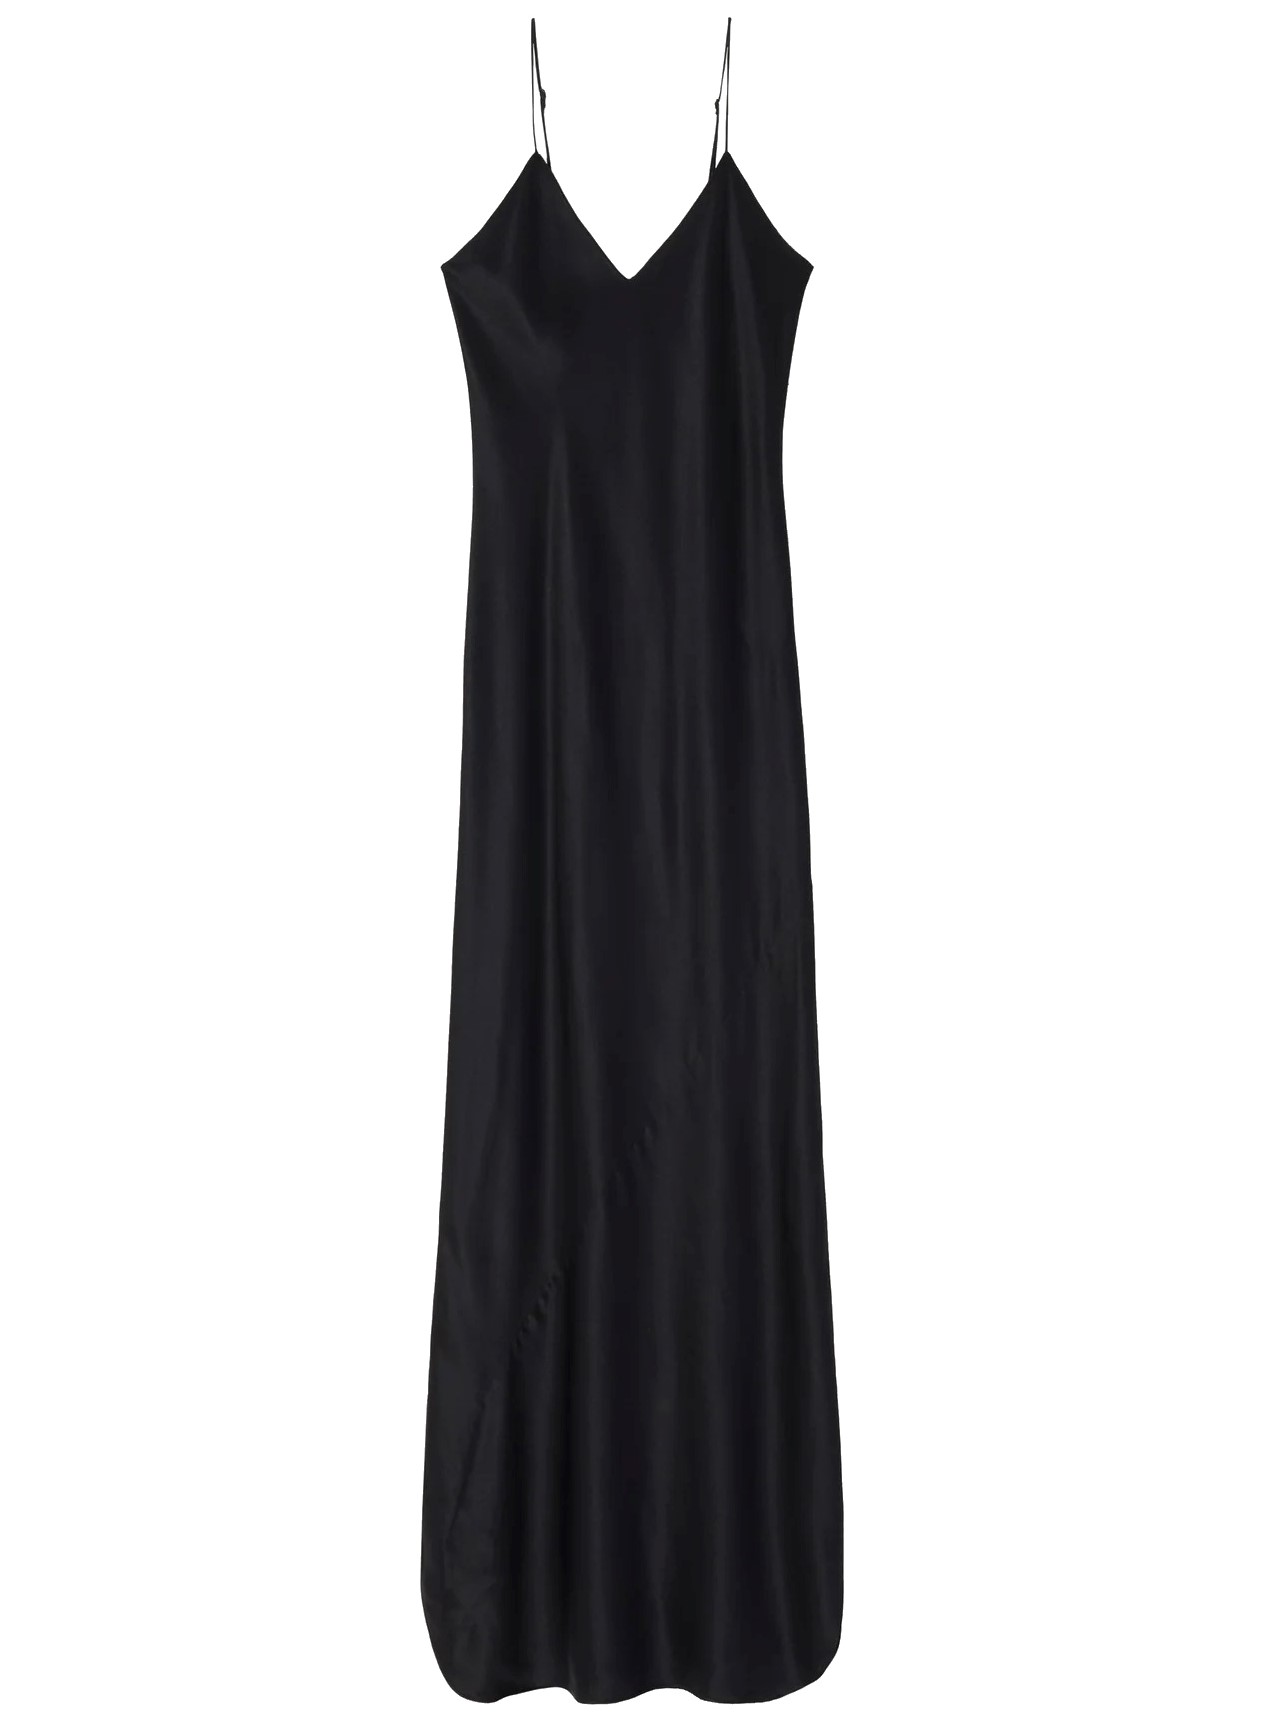 NILI LOTAN Cami Gown Dress in Black L